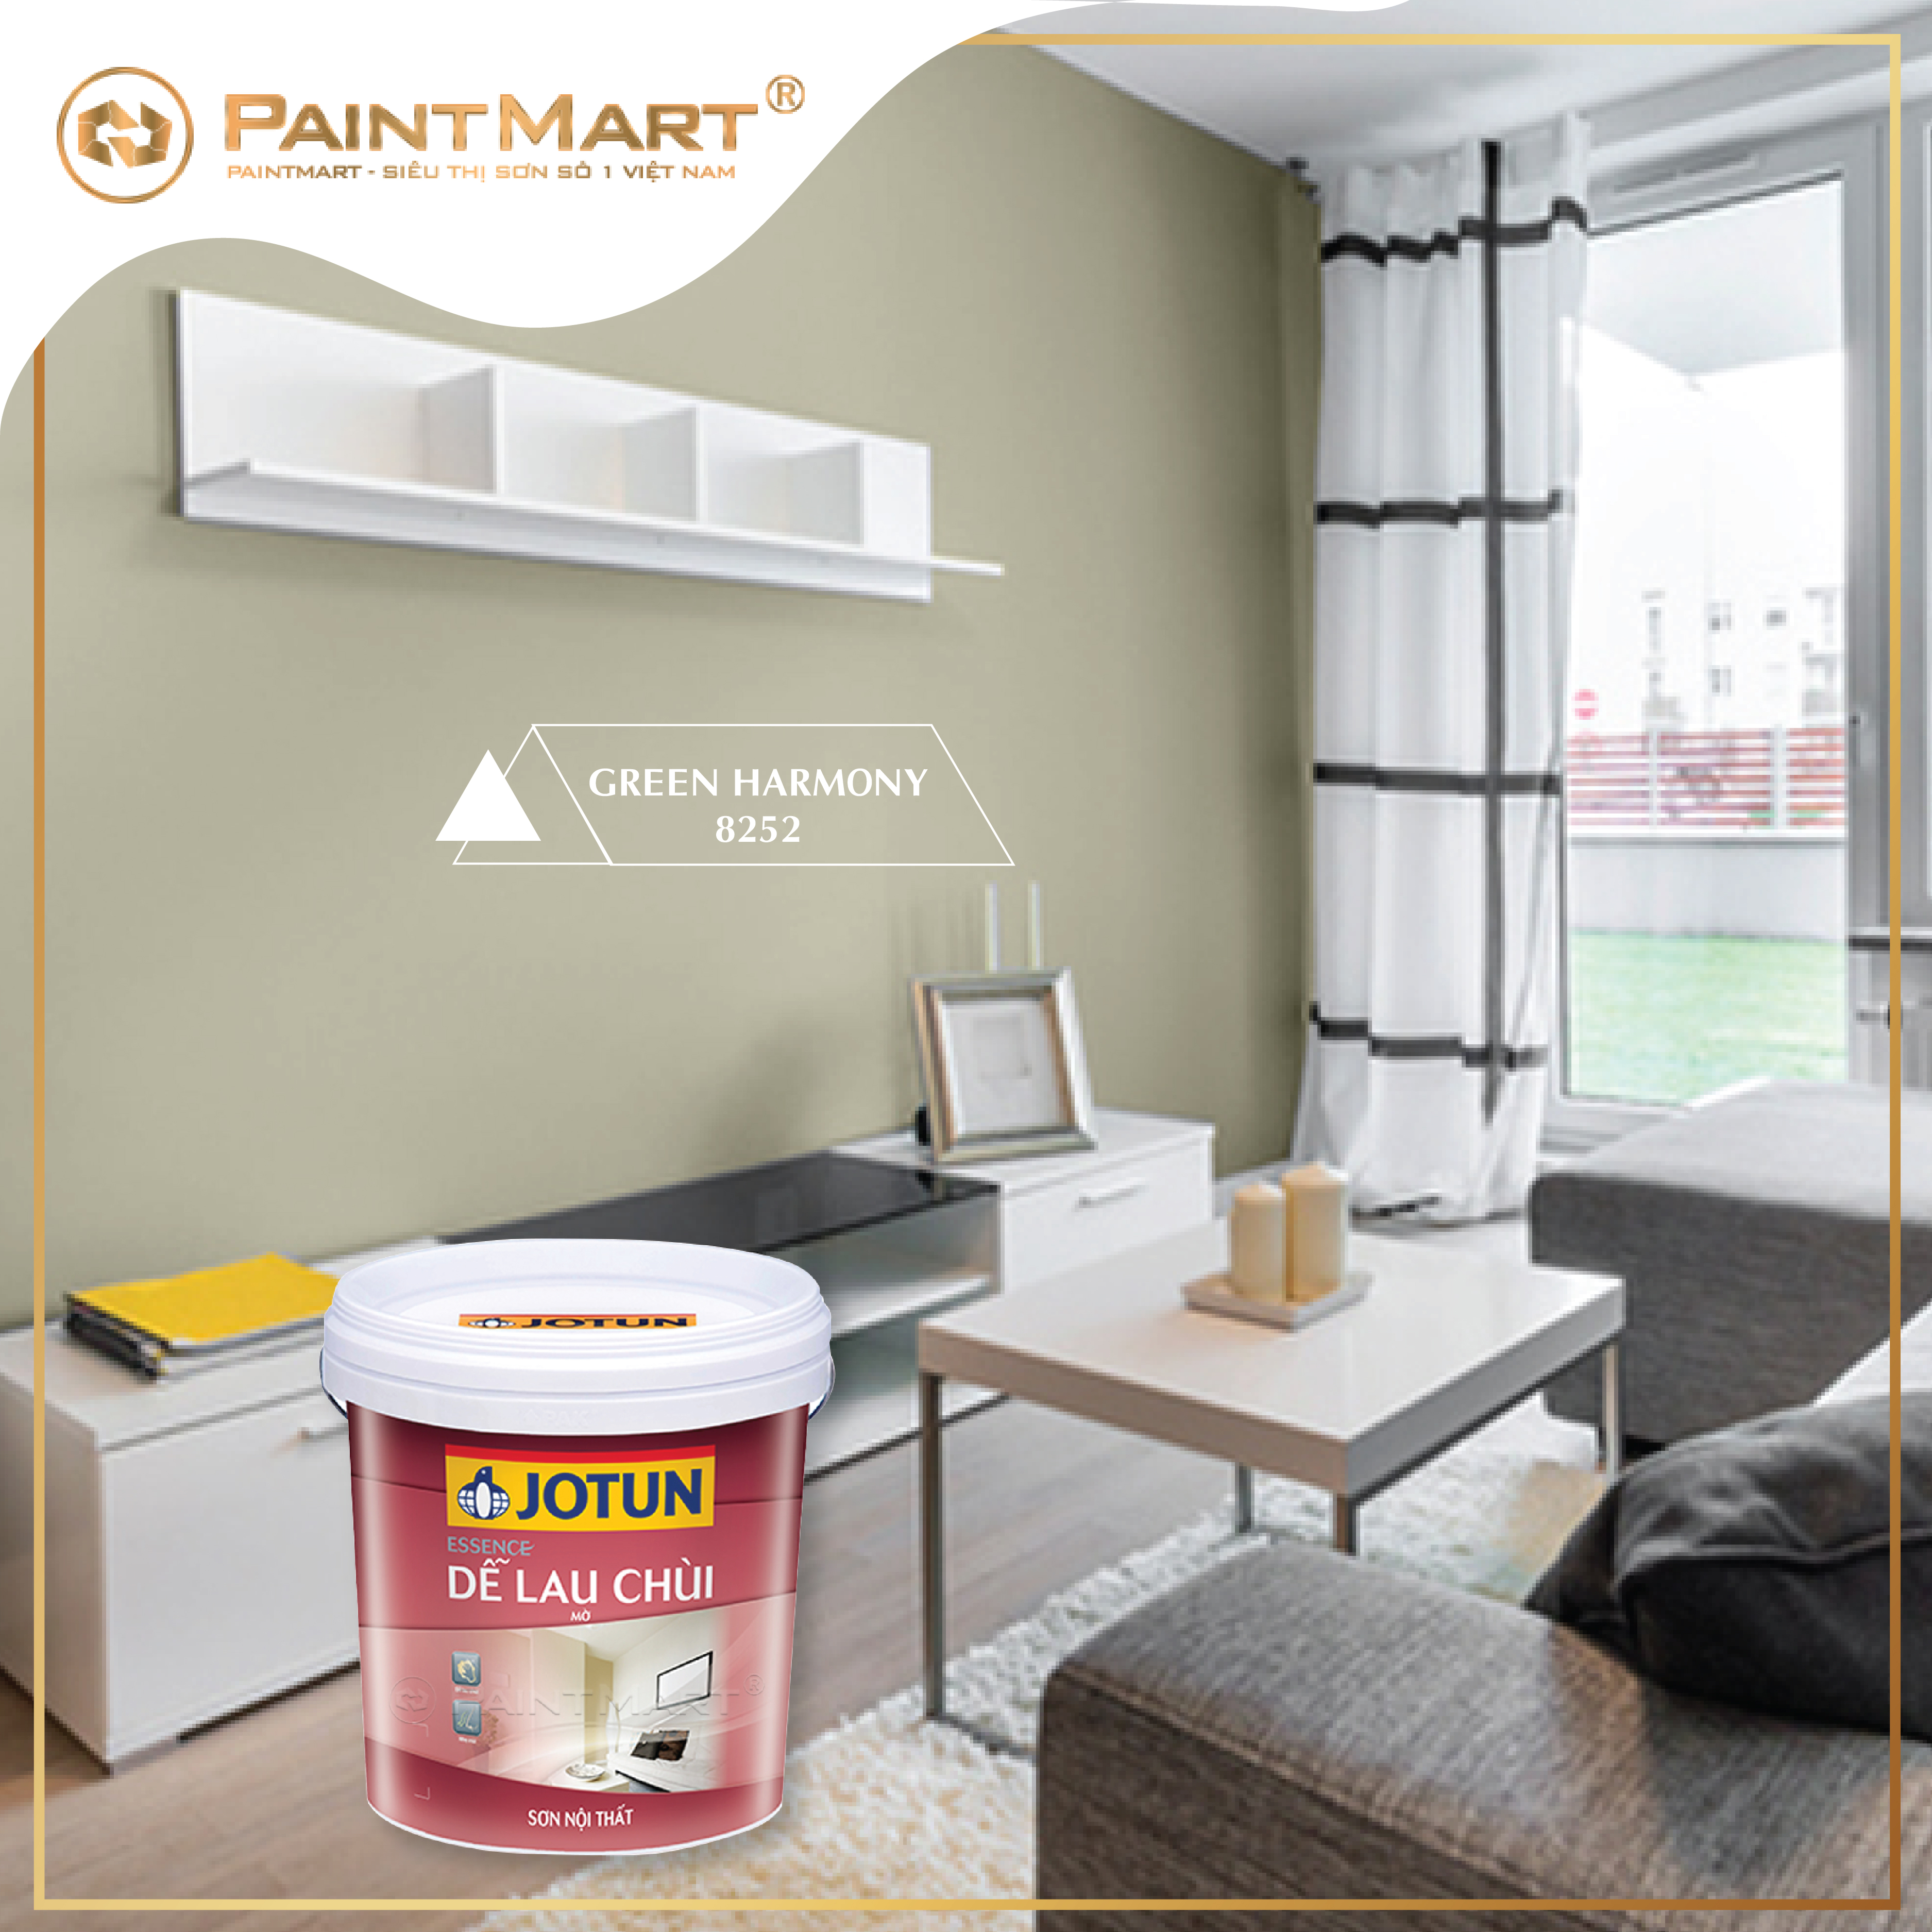 Màu sơn hiện đại giúp tôn lên đẳng cấp và sang trọng cho ngôi nhà của bạn. Hãy xem ngay hình ảnh liên quan để tìm cho mình màu sơn phù hợp với sở thích và phong cách nhé!